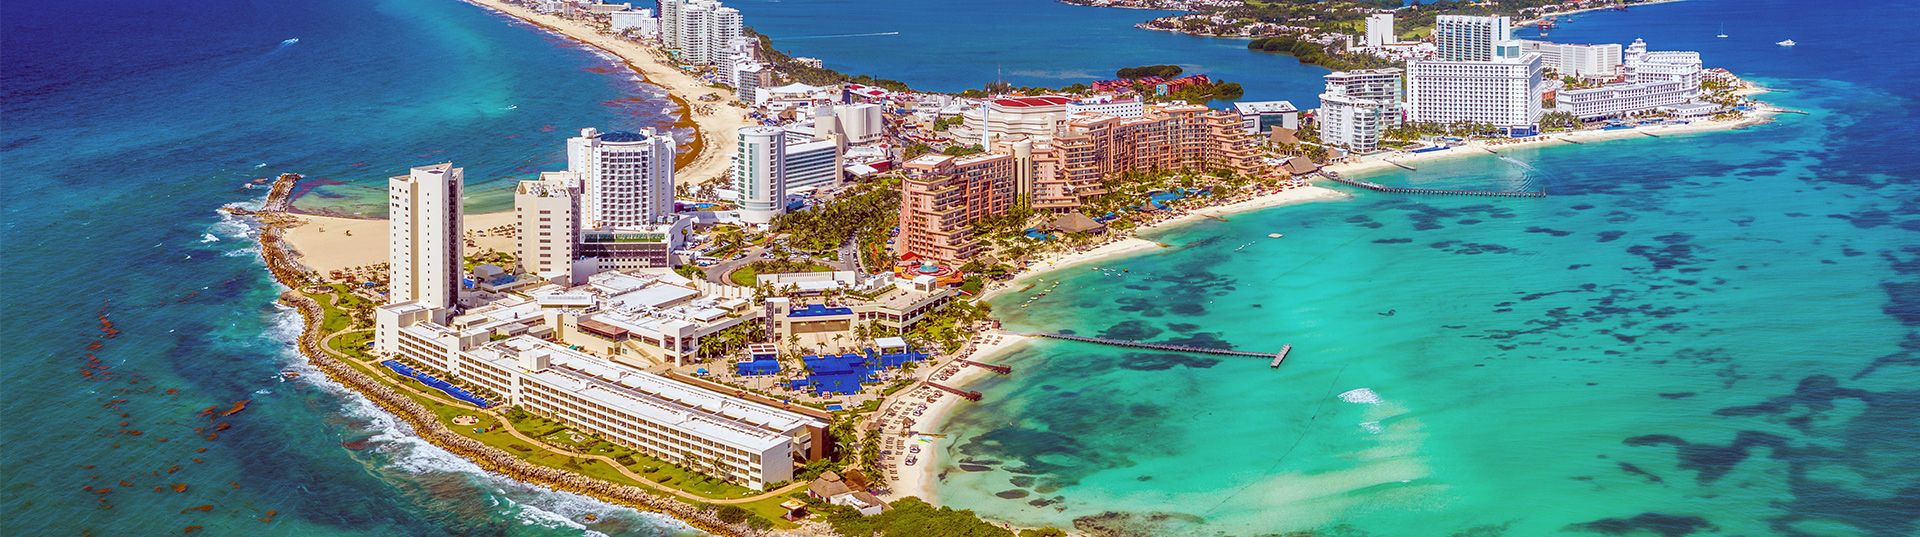 Cancun um destino completo